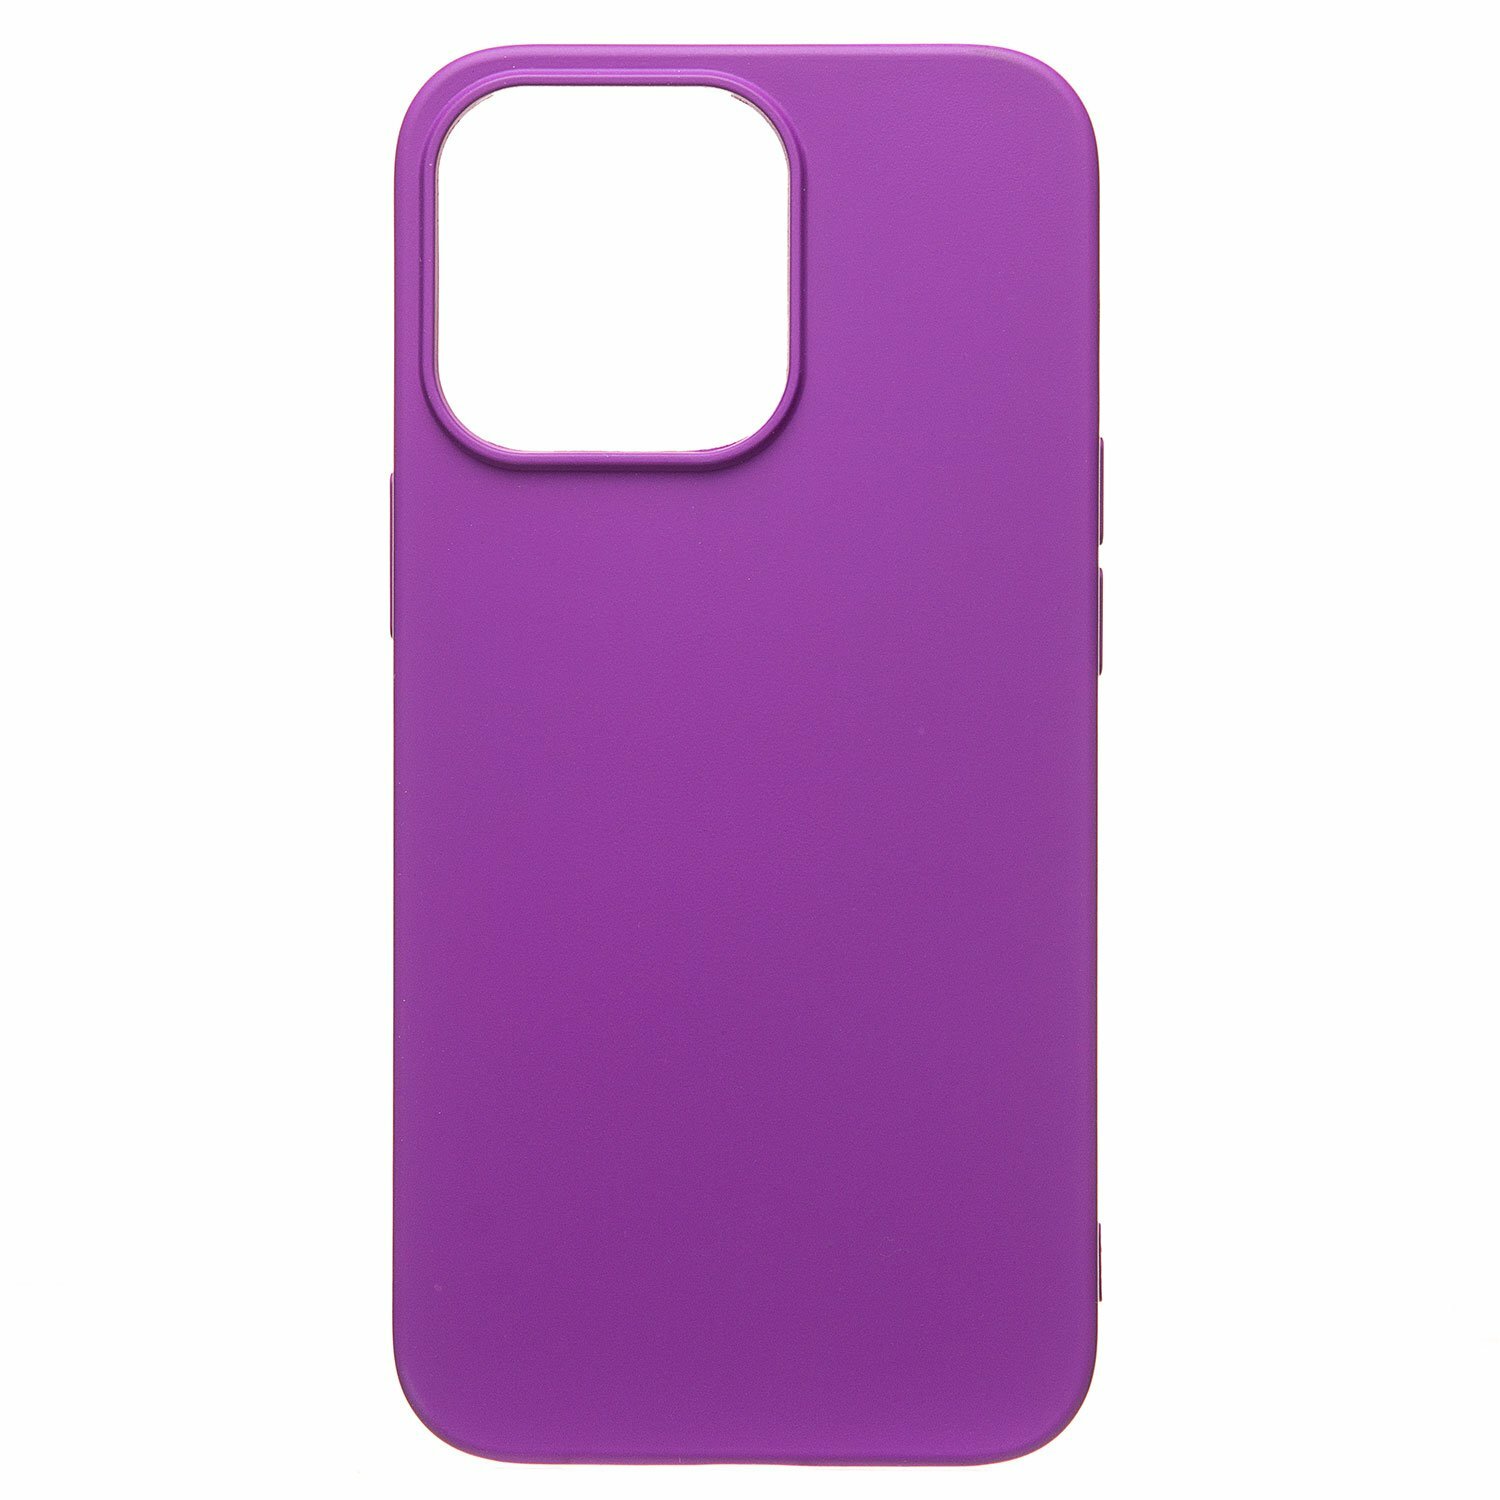 Однотонный силиконовый чехол для Apple iPhone 13 Pro/с soft touch покрытием /фиолетовый